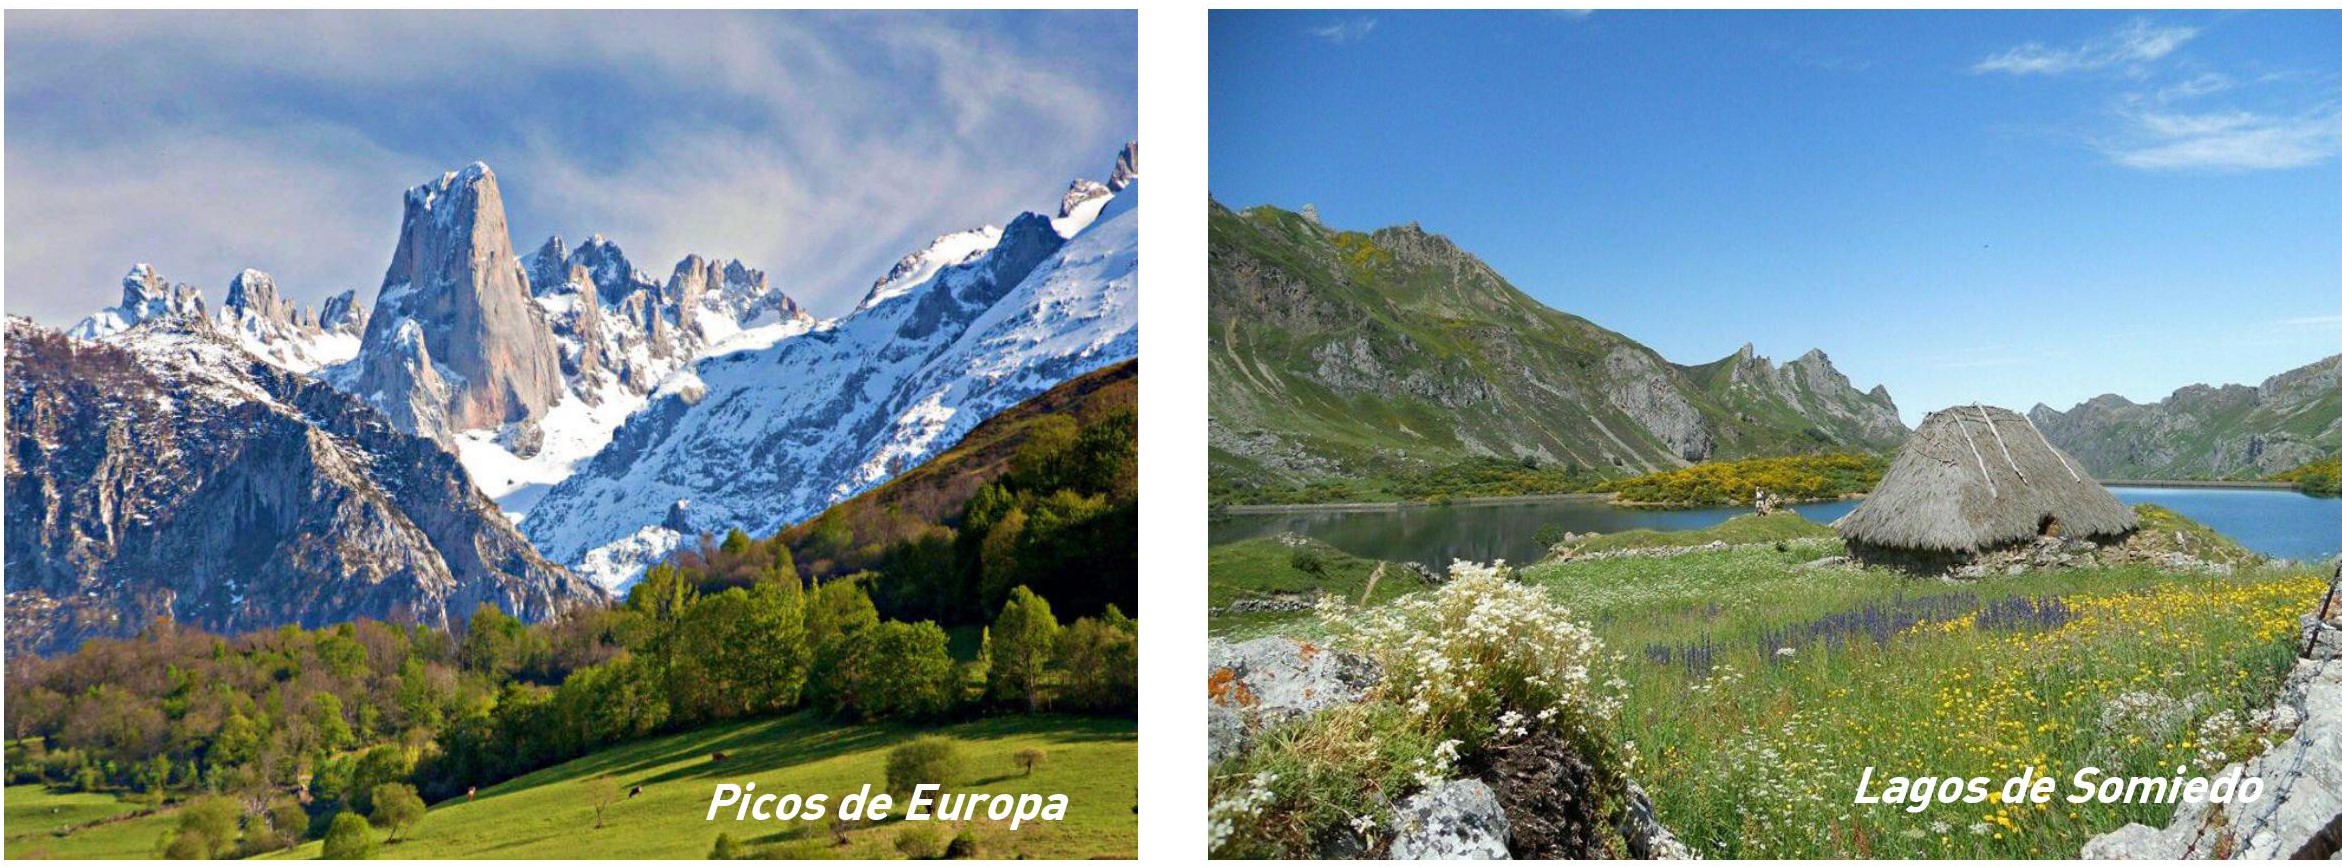 Asturias-Turismo-idiomatico-1.jpg